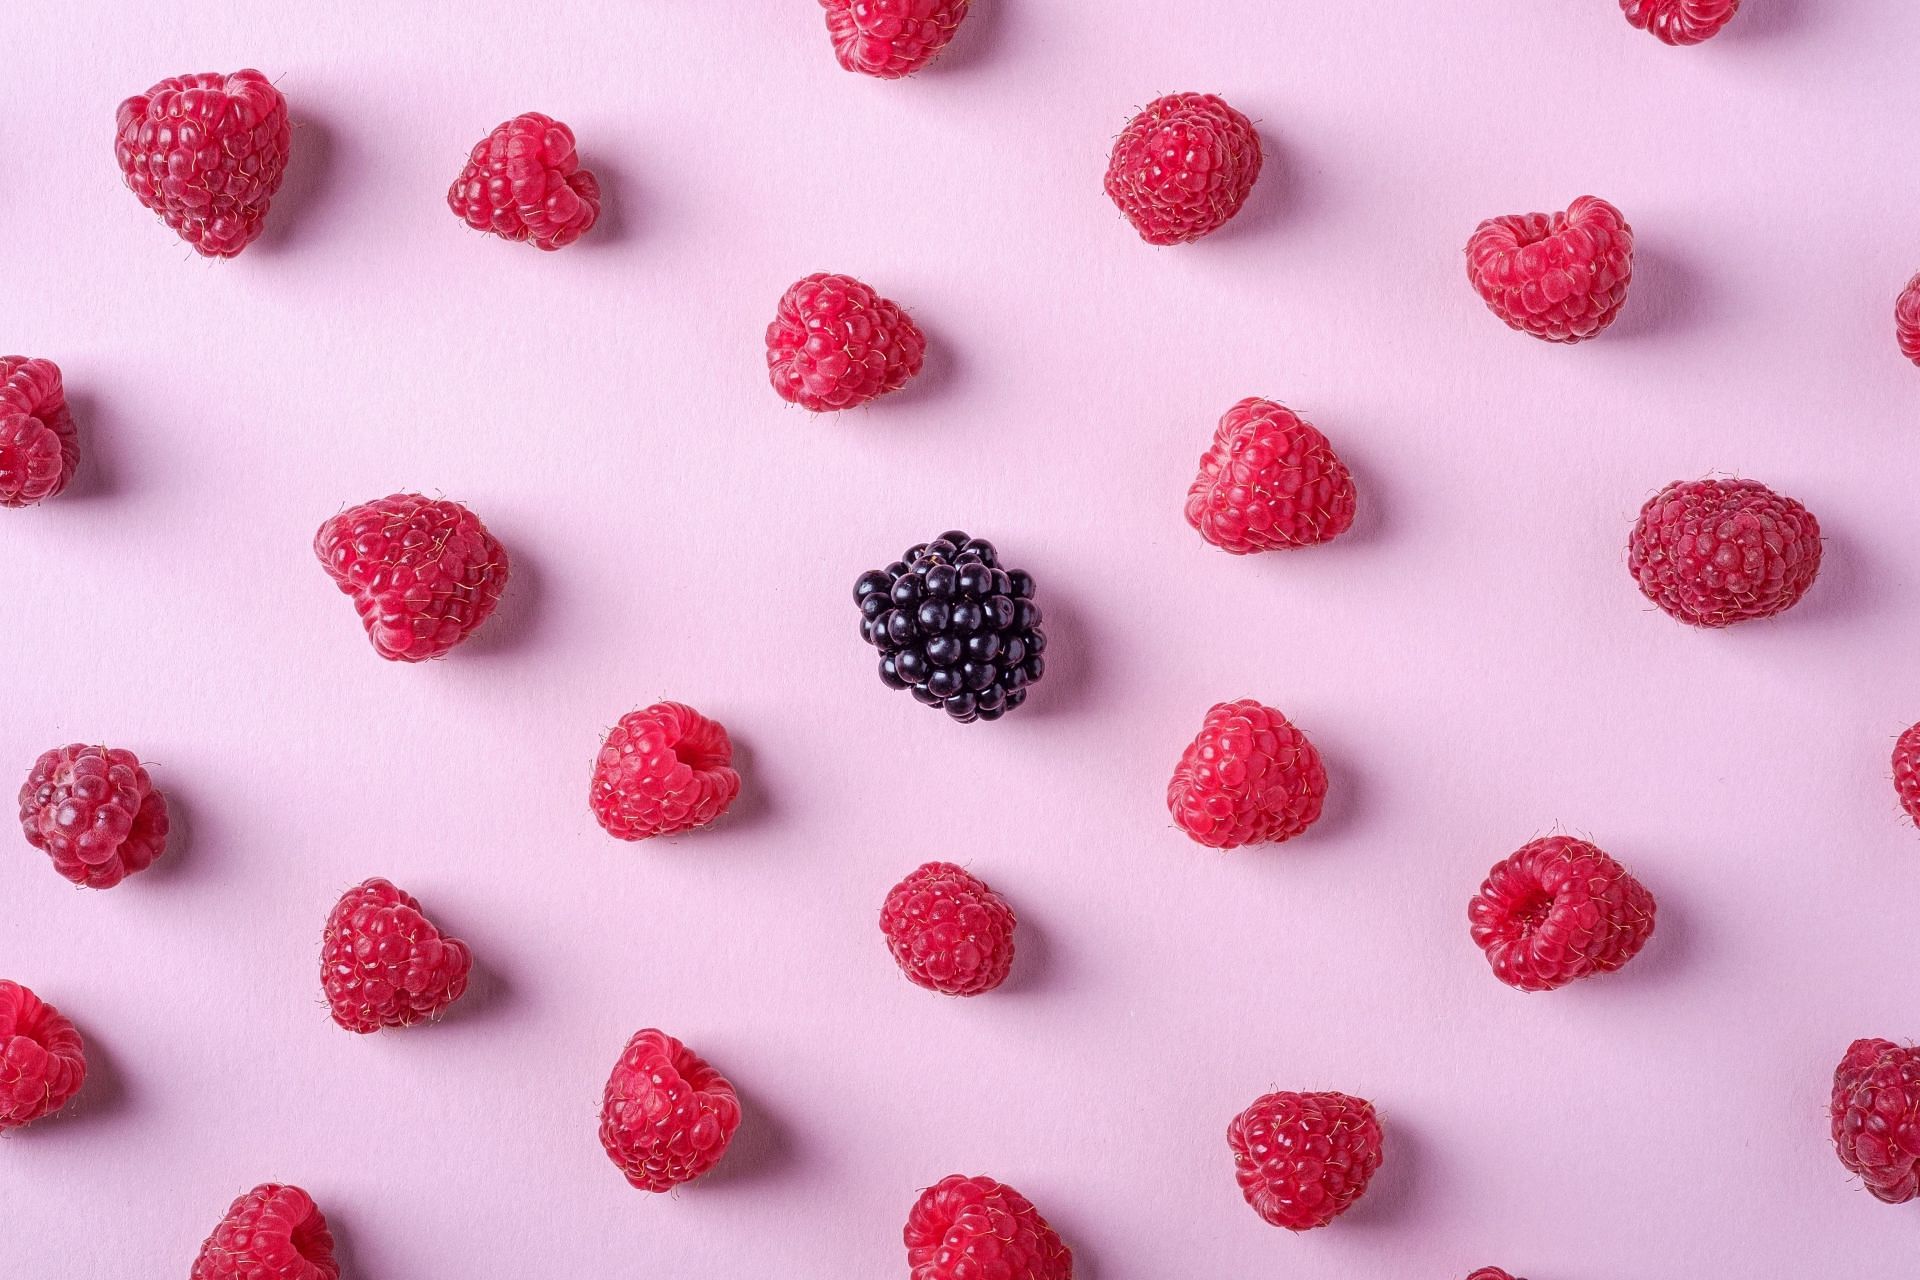 Raspberries come in different varieties. (Image via Unsplash/Rodion Kutsaiev)